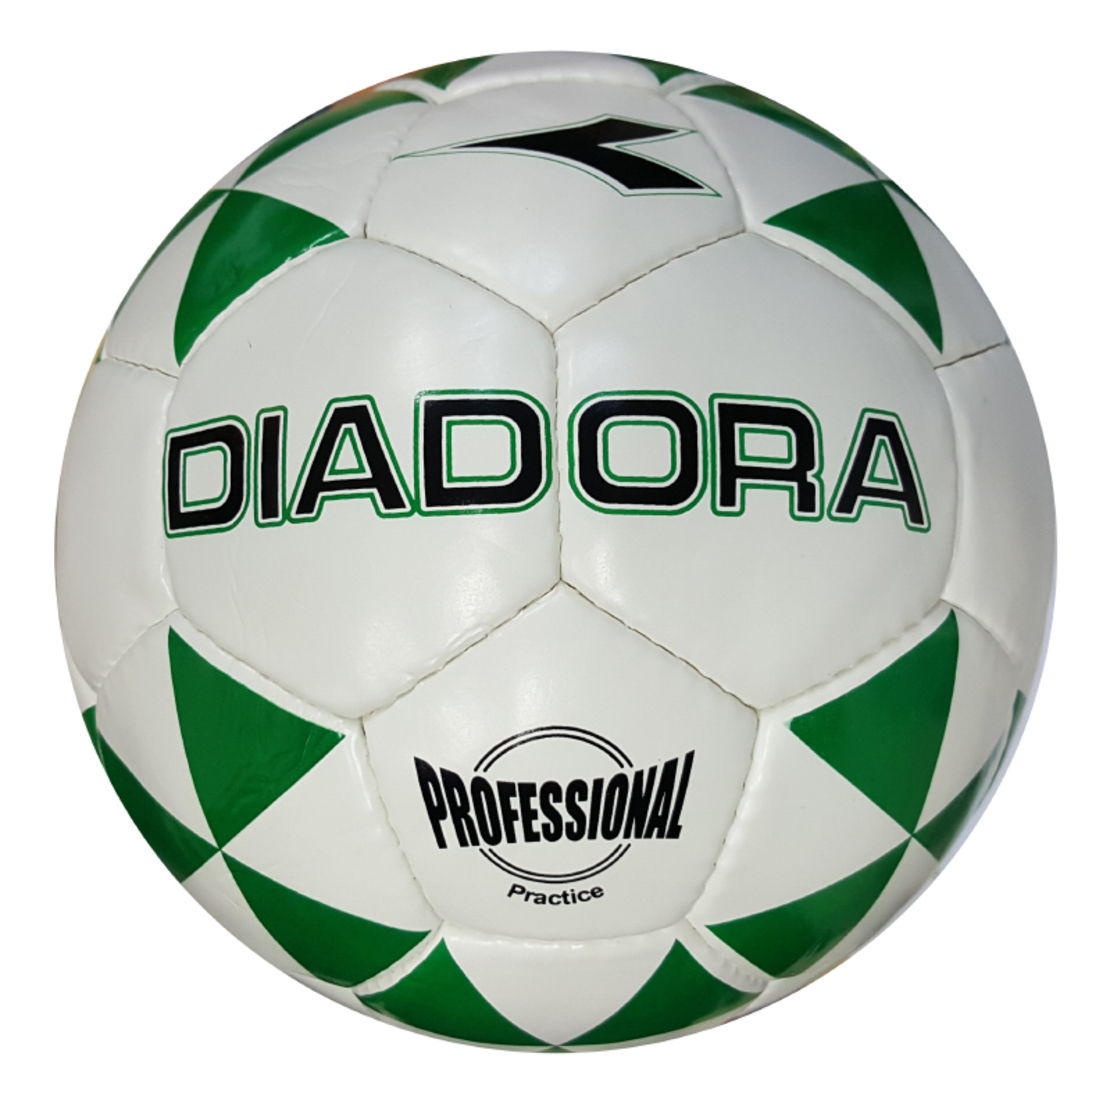 כדורגל דיאדורה מס' 5 DIADORA PRESTIGE מקצועי